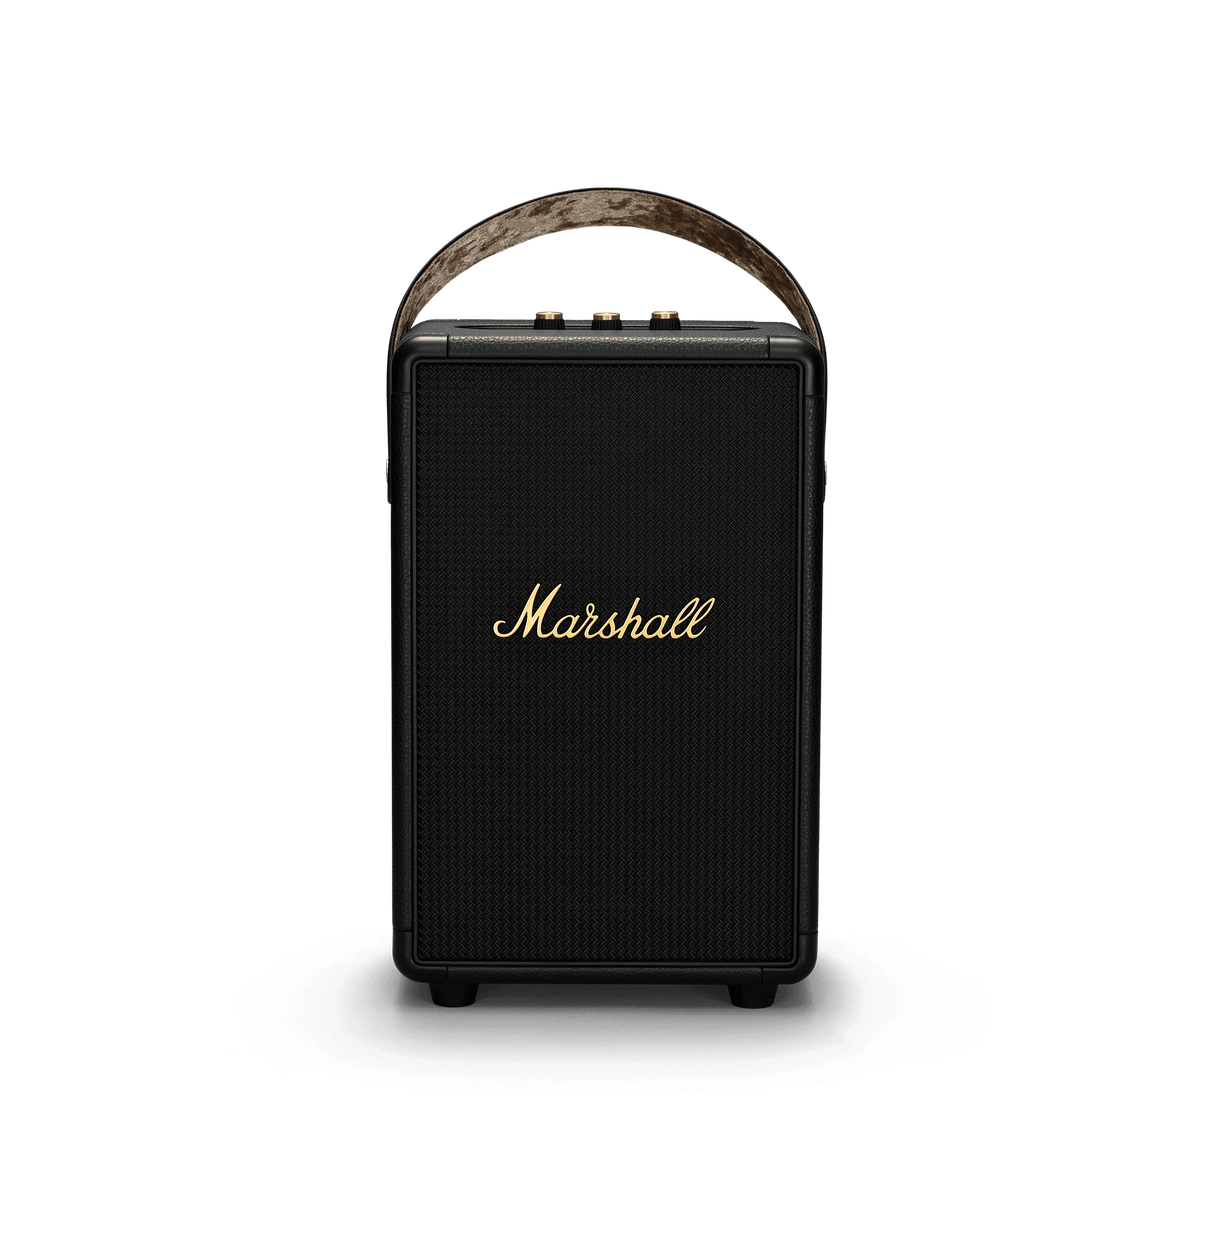 Marshall - Tufton Speaker Black&Brass